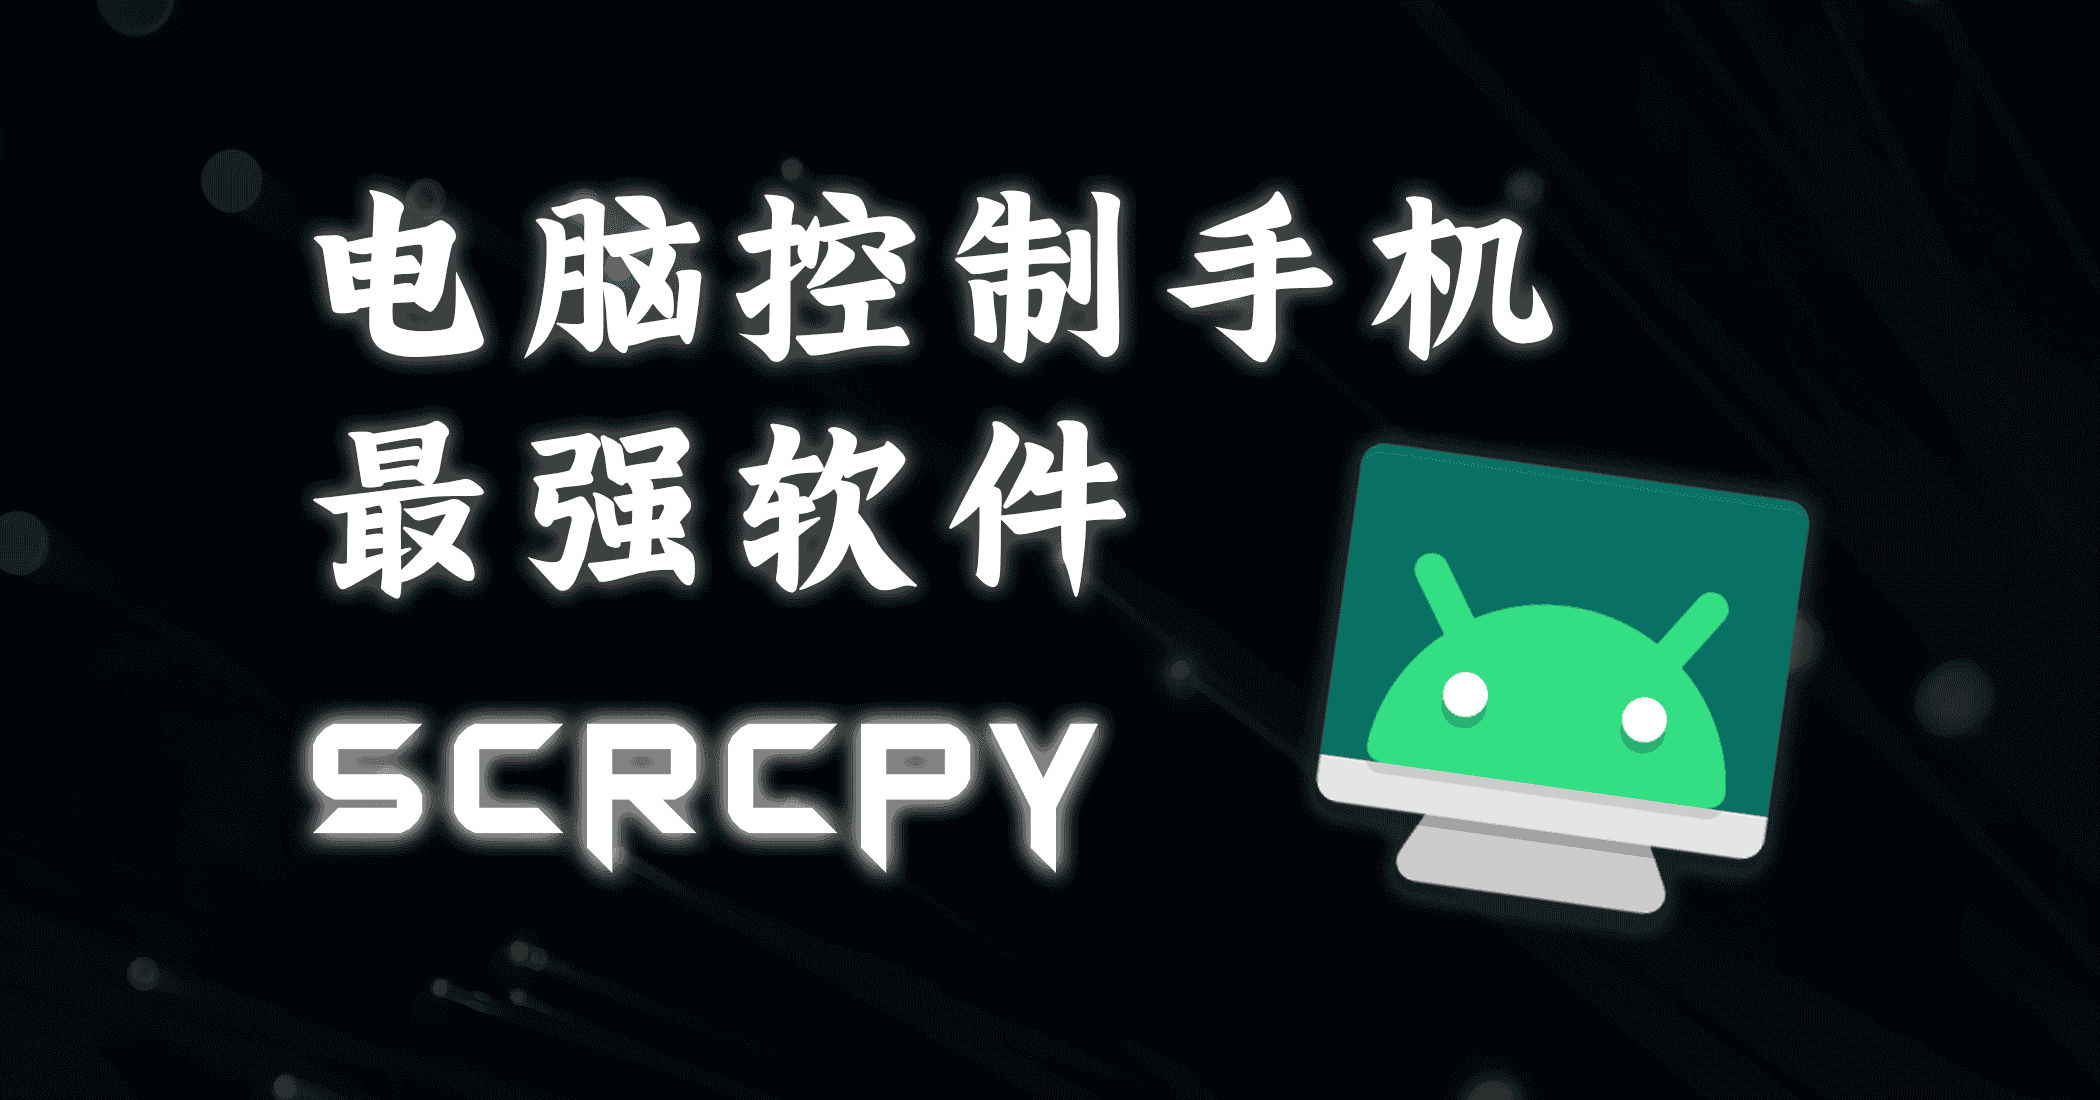 Scrcpy安卓最强投屏控制软件-JACK小桔子的小屋